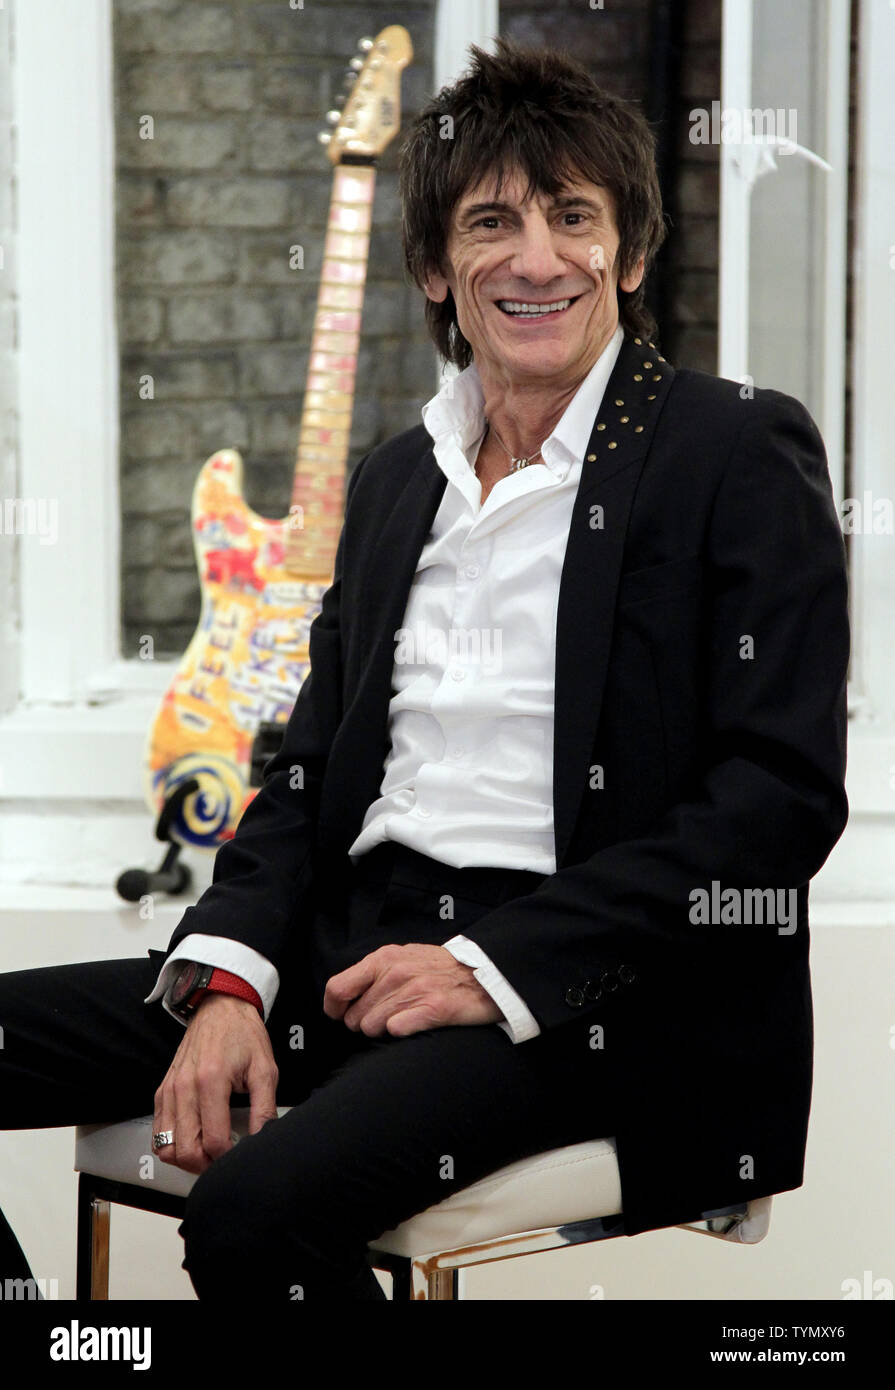 Ron le guitariste des Rolling Stones Ronnie Wood parle lors d'une conférence de presse à l'ouverture d'une exposition de ses œuvres, "Visages, temps et lieux" à New York le 9 avril 2012. UPI/John Angelillo Banque D'Images